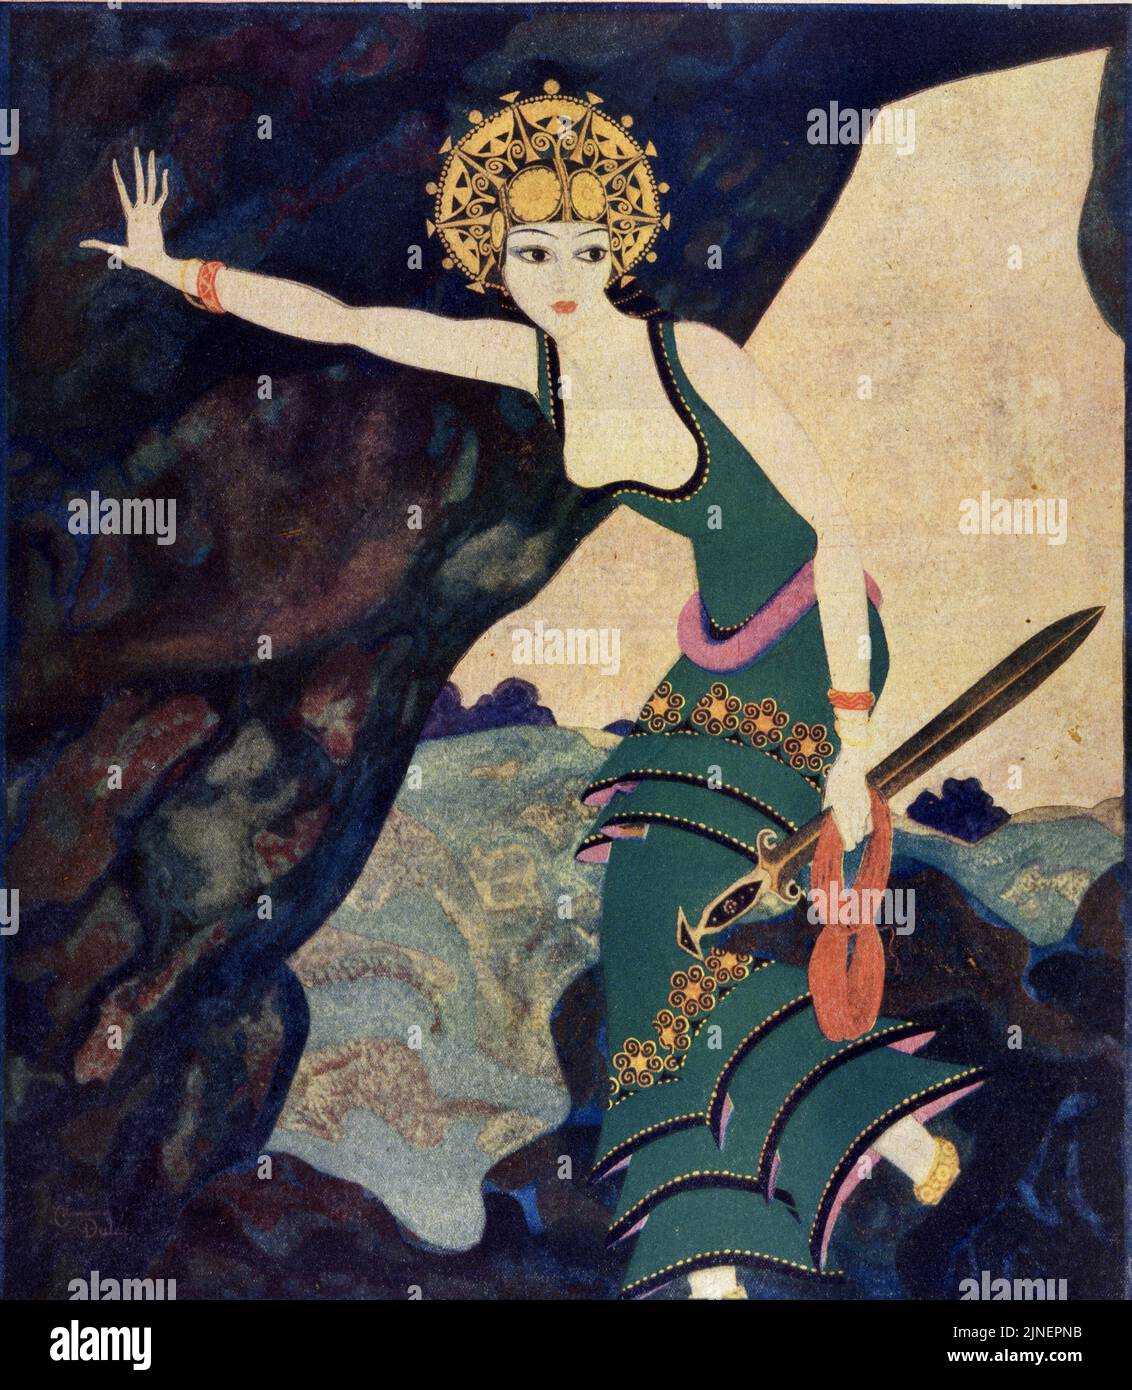 'Ariadne' pubblicato il 31,1929 Marzo sulla rivista American Weekly dipinta da Edmund Dulac per la famosa serie 'Vamps from History'. Foto Stock